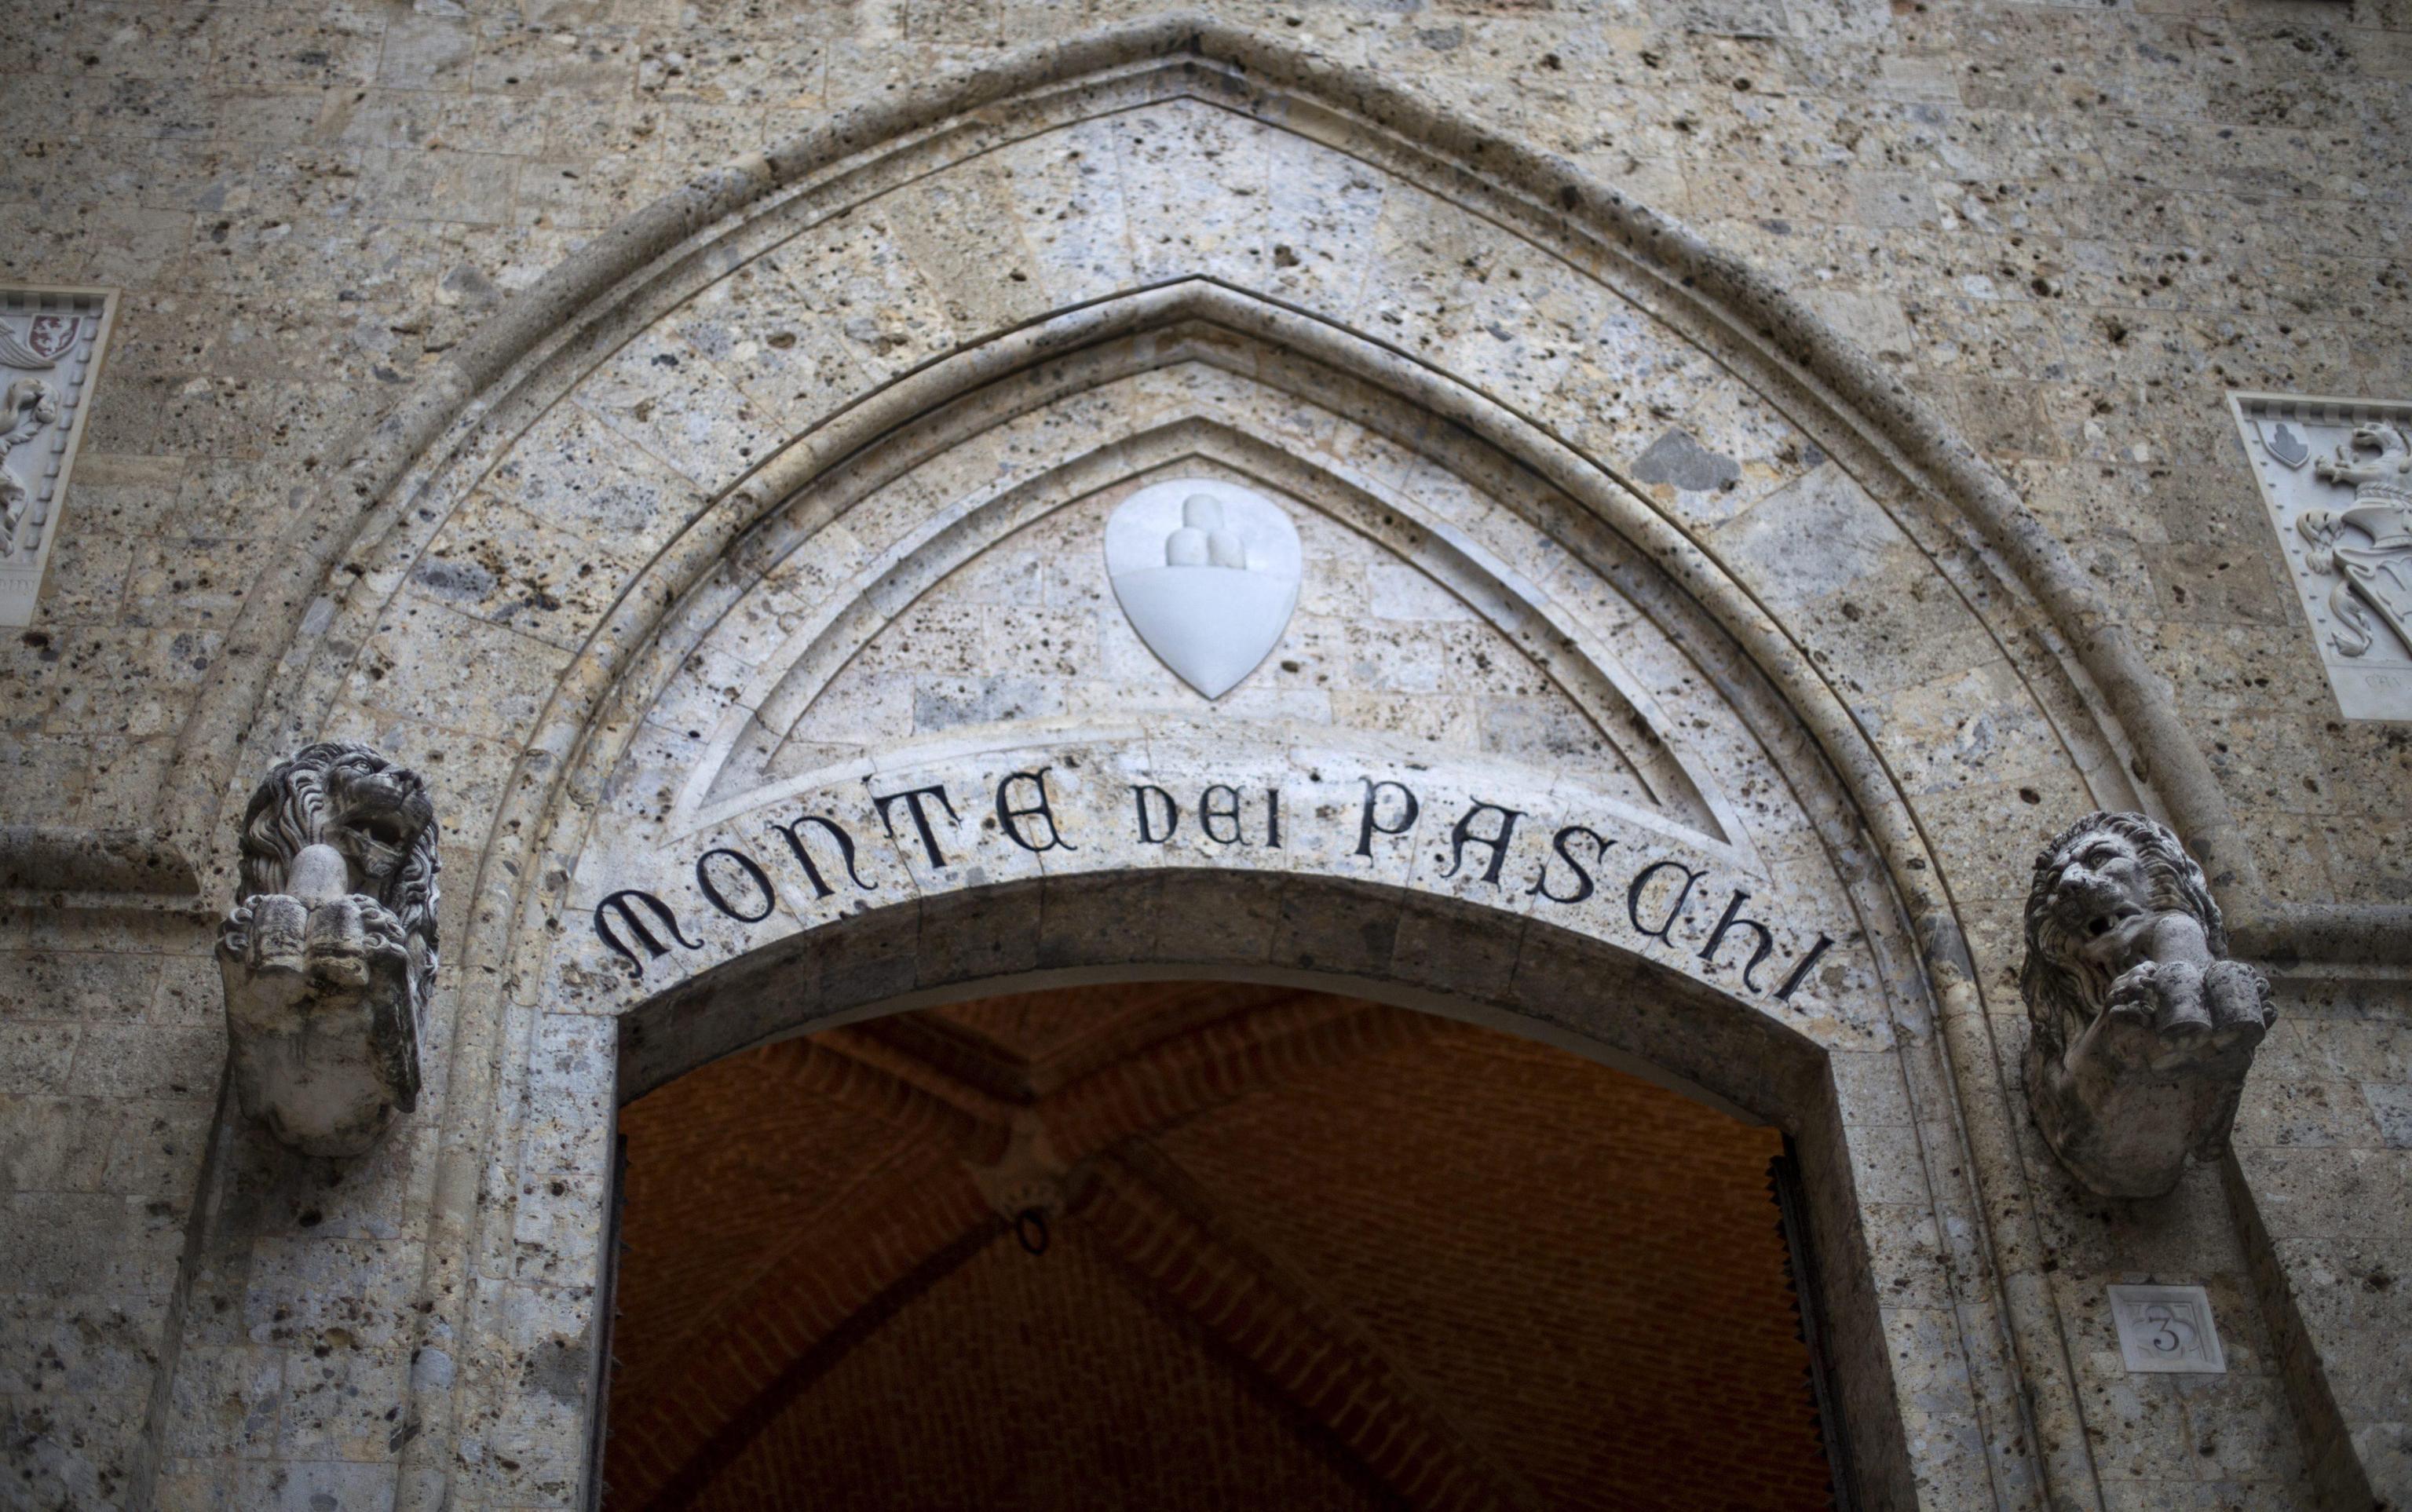 A file photo dated 23 March 2016 shows the Banca Monte dei Paschi di Siena (BMPS or MPS) headquarters in piazza Salimbeni (Salinbeni Square), in Siena, Italy. 
ANSA/MATTIA SEDDA